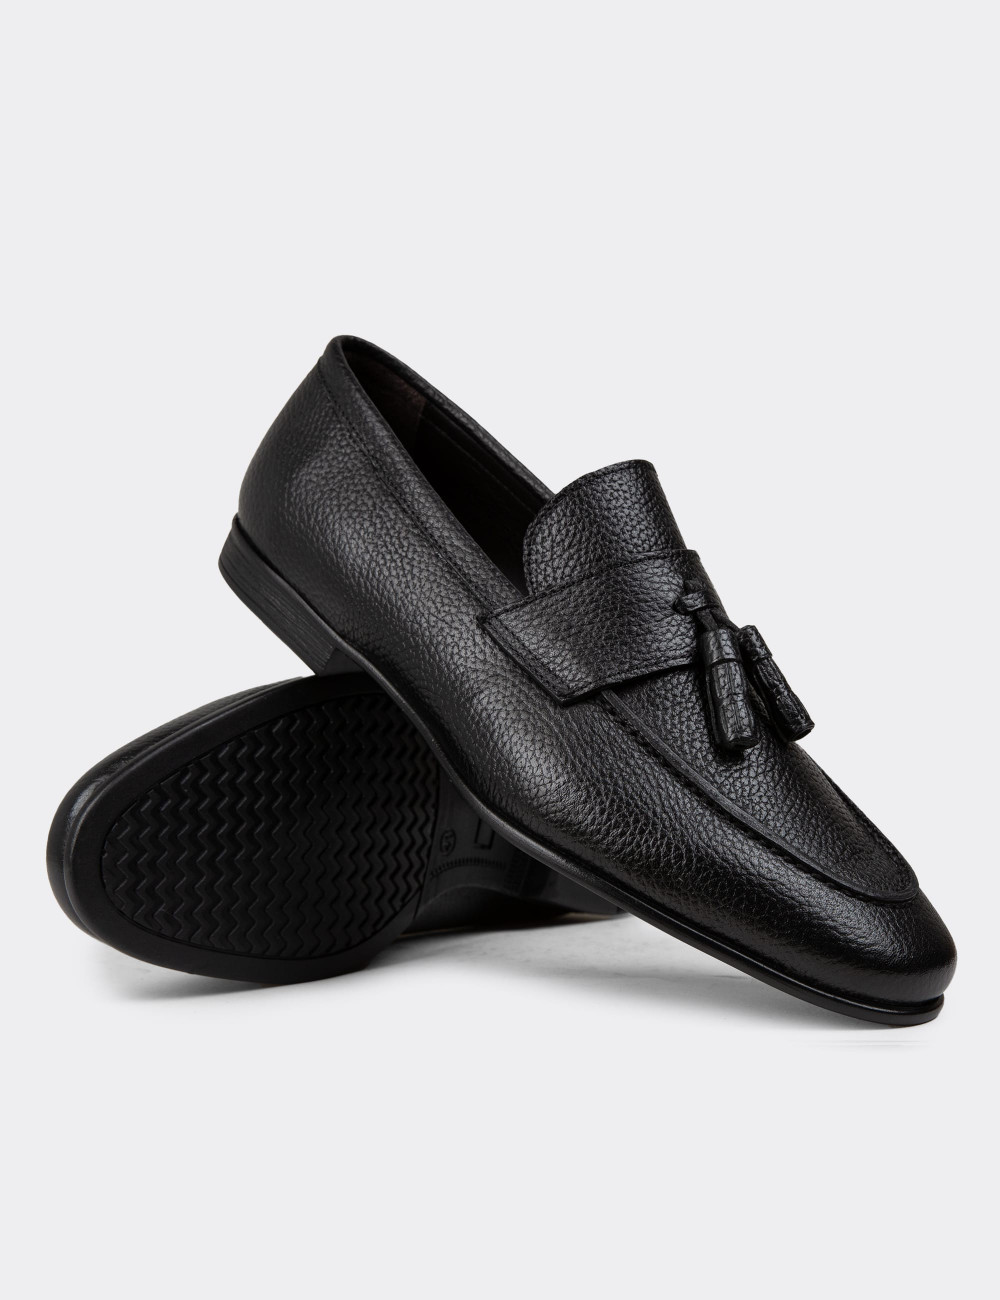 Hakiki Deri Siyah Püsküllü Erkek Loafer Ayakkabı - 01989MSYHC01